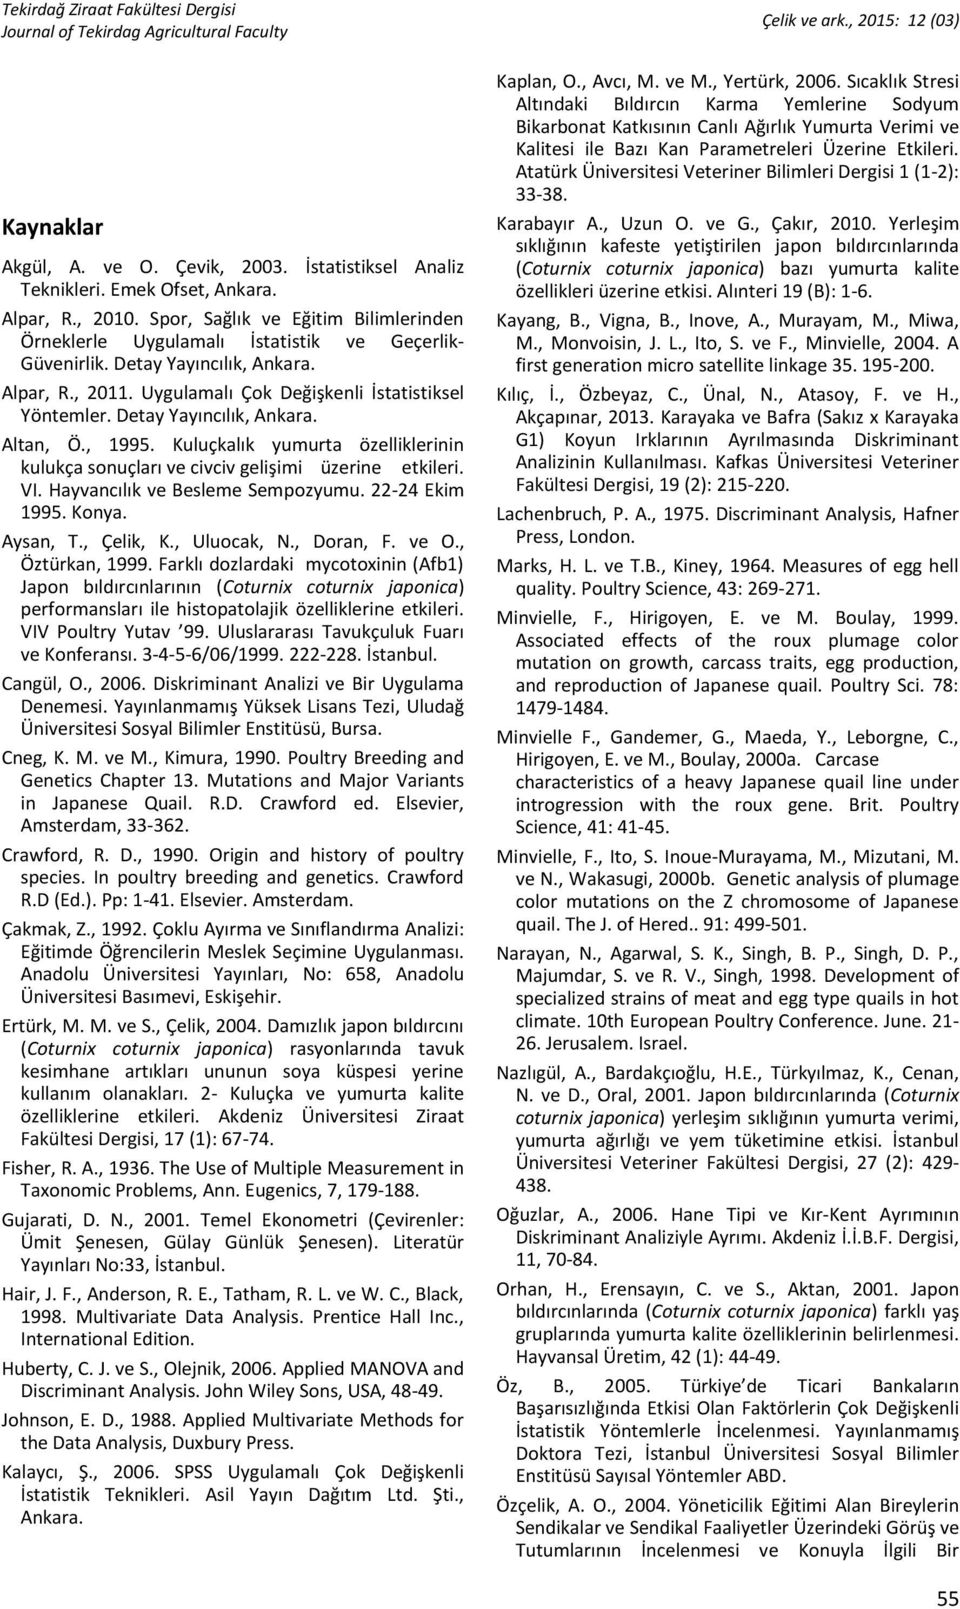 Detay Yayıncılık, Ankara. Altan, Ö., 1995. Kuluçkalık yumurta özelliklerinin kulukça sonuçları ve civciv gelişimi üzerine etkileri. VI. Hayvancılık ve Besleme Sempozyumu. 22-24 Ekim 1995. Konya.